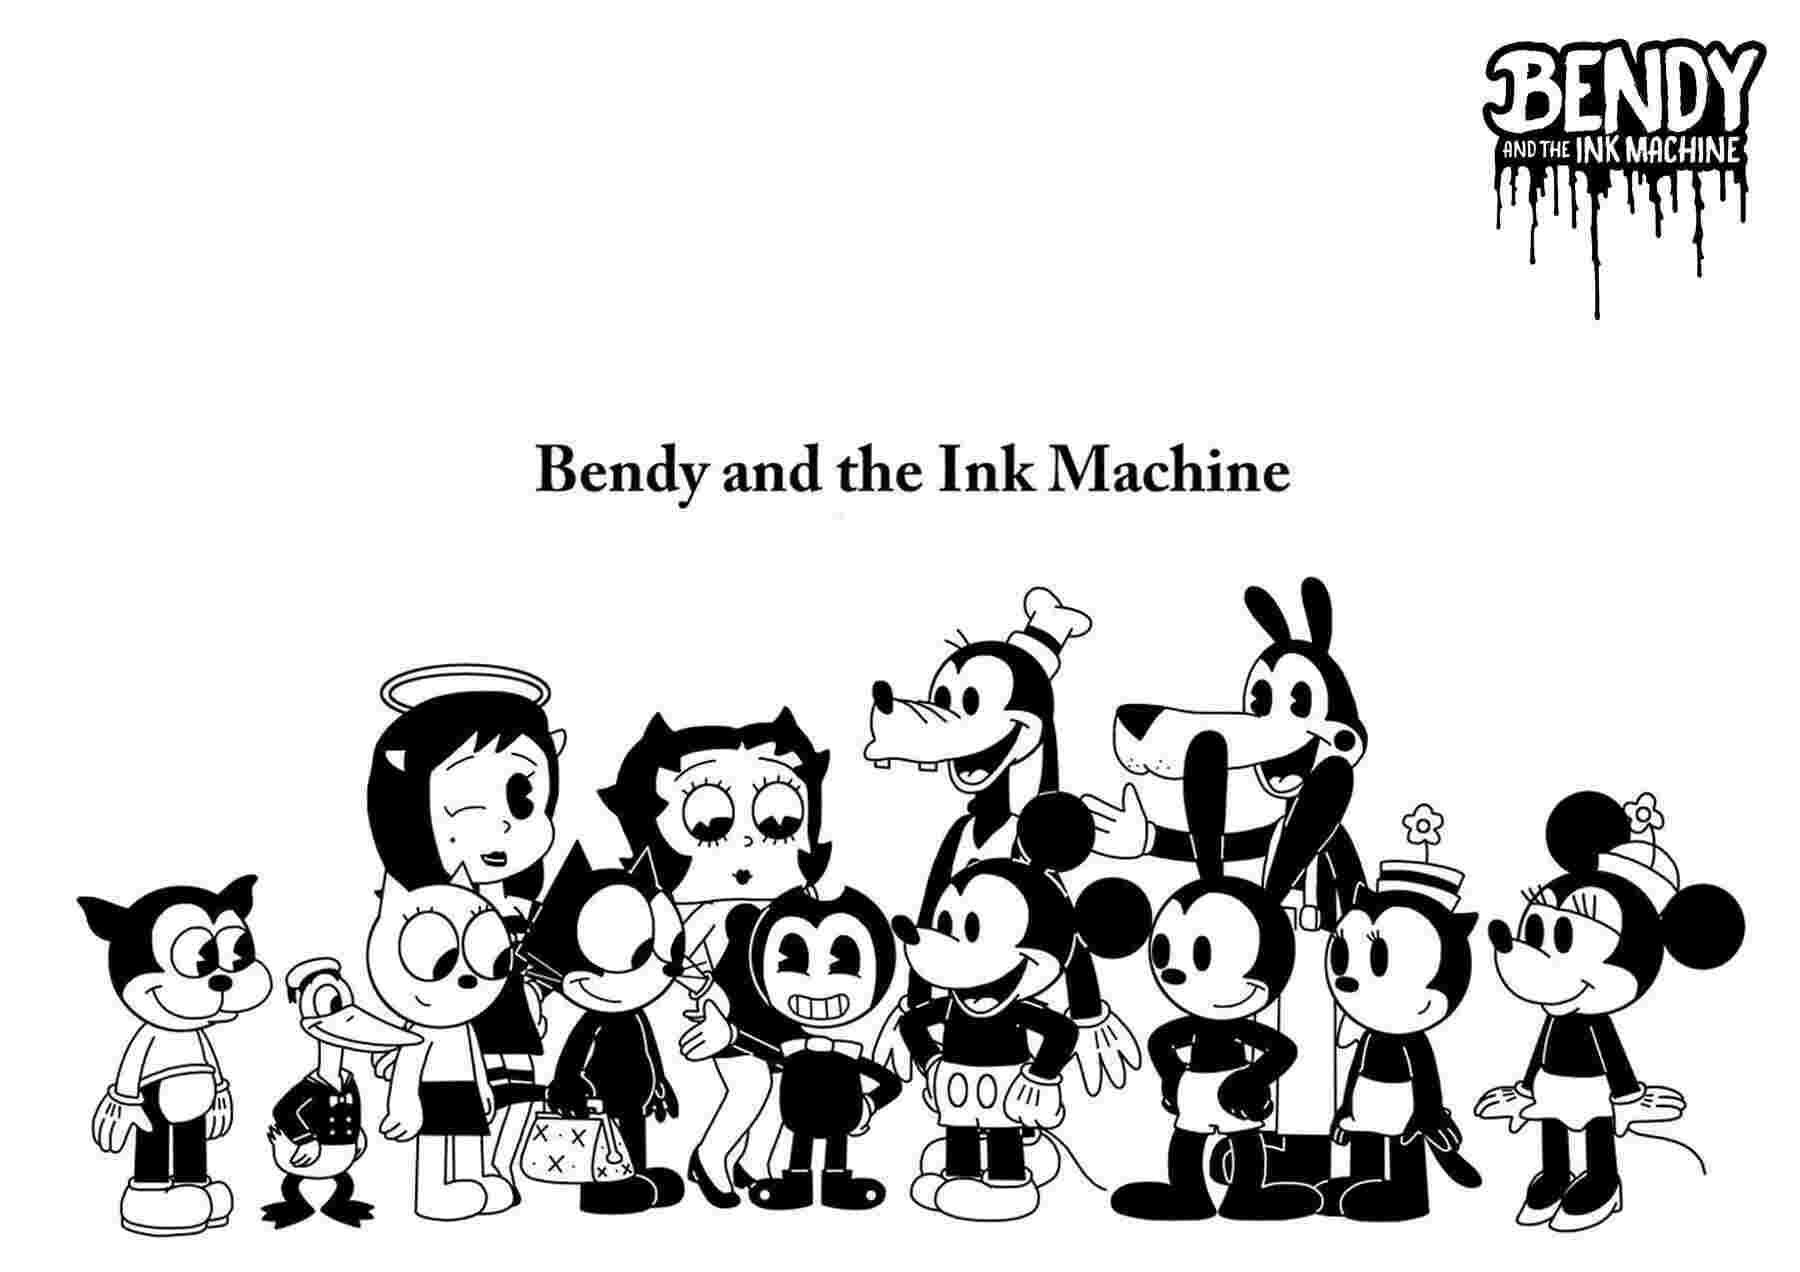 El pequeño Bendy y sus mejores amigos de Bendy y la máquina de tinta de Bendy